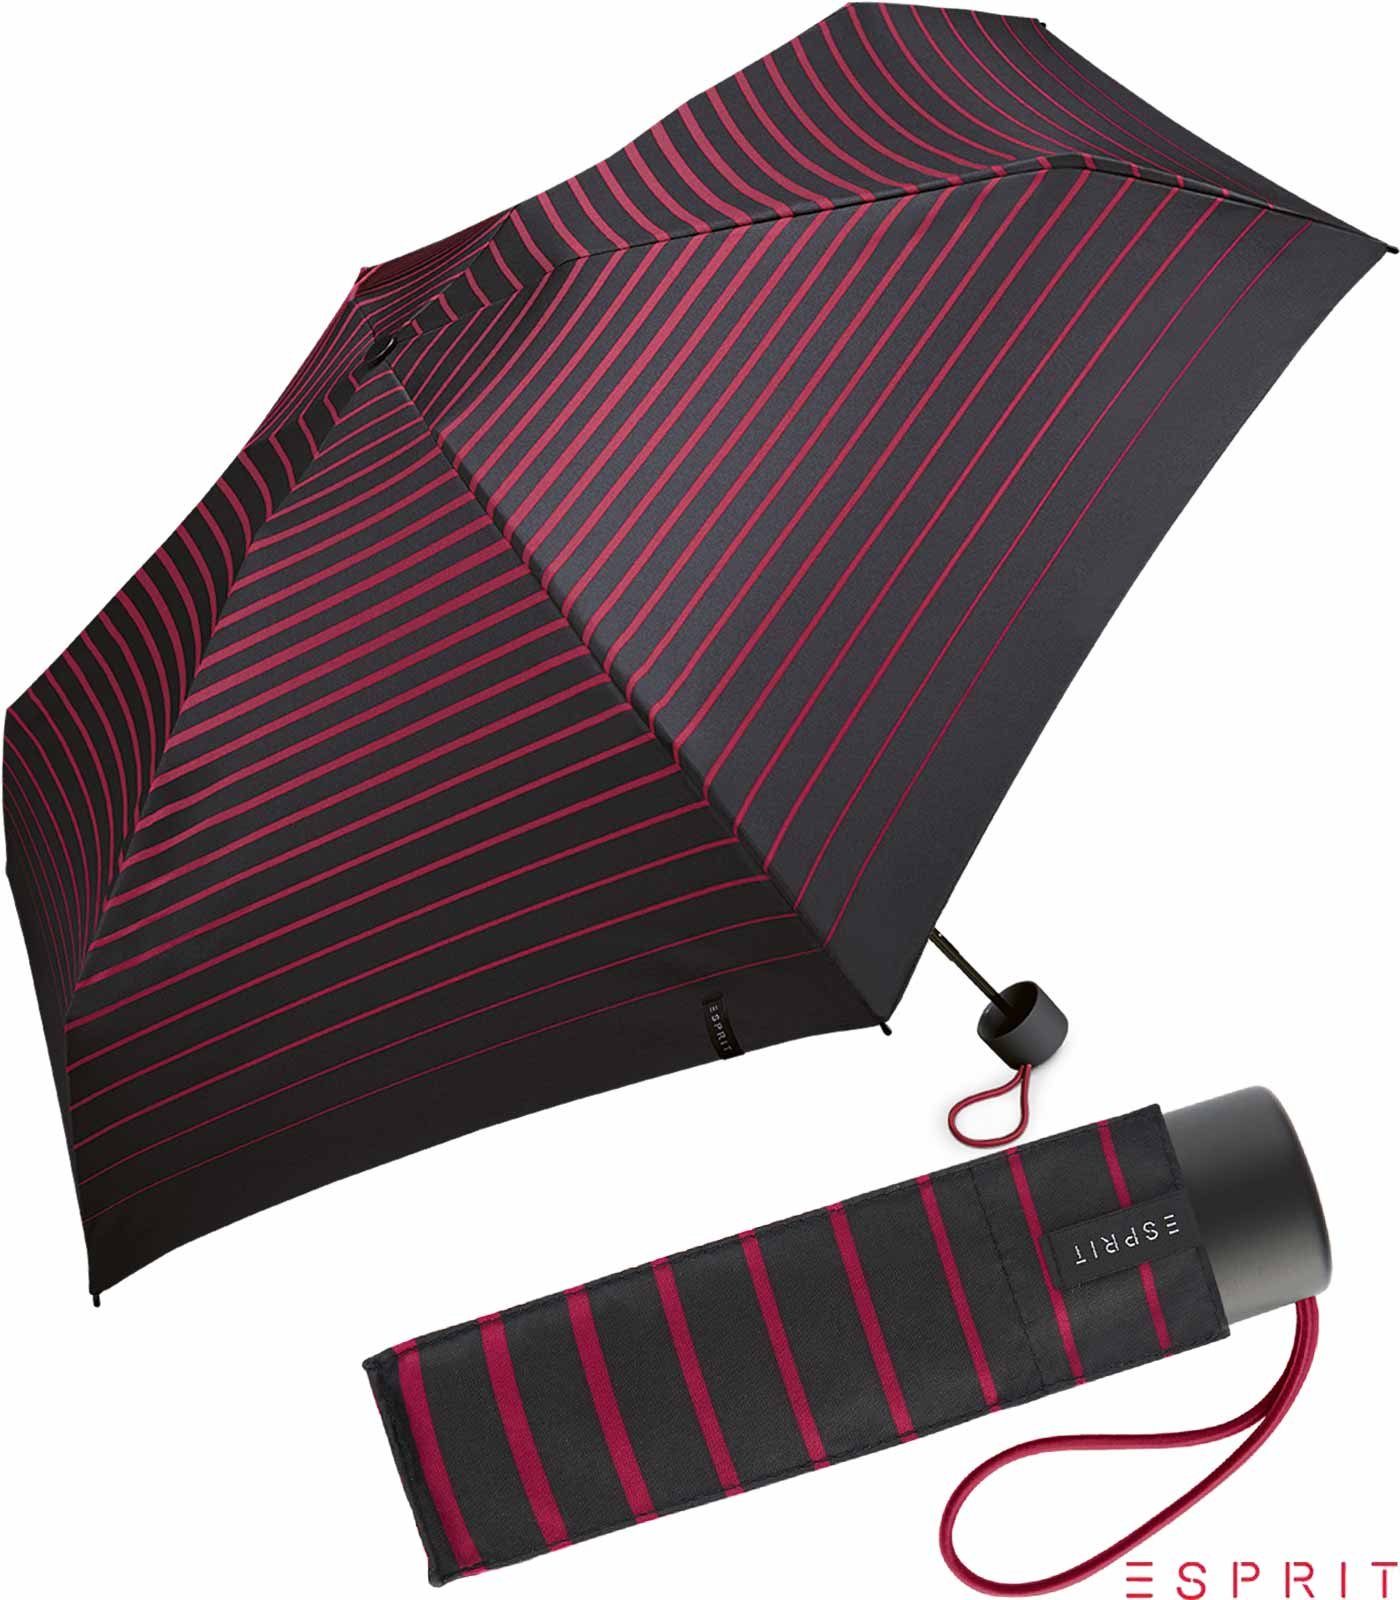 Esprit Taschenregenschirm Damen Super Mini Petito - Degradee Stripe - vivacious pink, winzig klein, in moderner Streifen-Optik